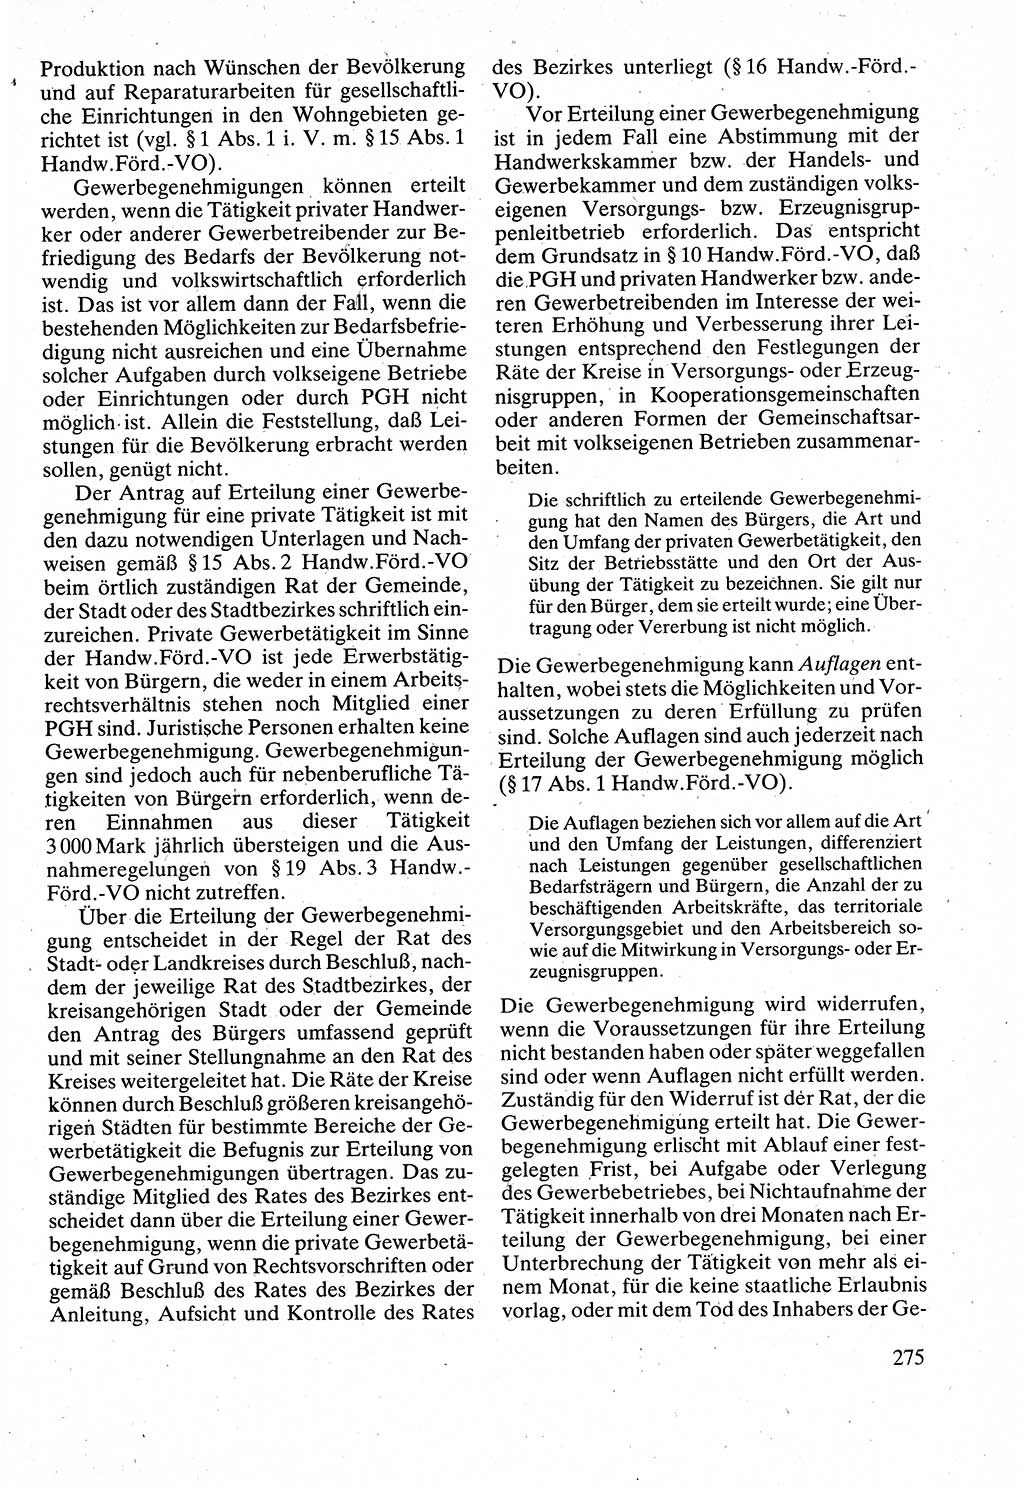 Verwaltungsrecht [Deutsche Demokratische Republik (DDR)], Lehrbuch 1988, Seite 275 (Verw.-R. DDR Lb. 1988, S. 275)